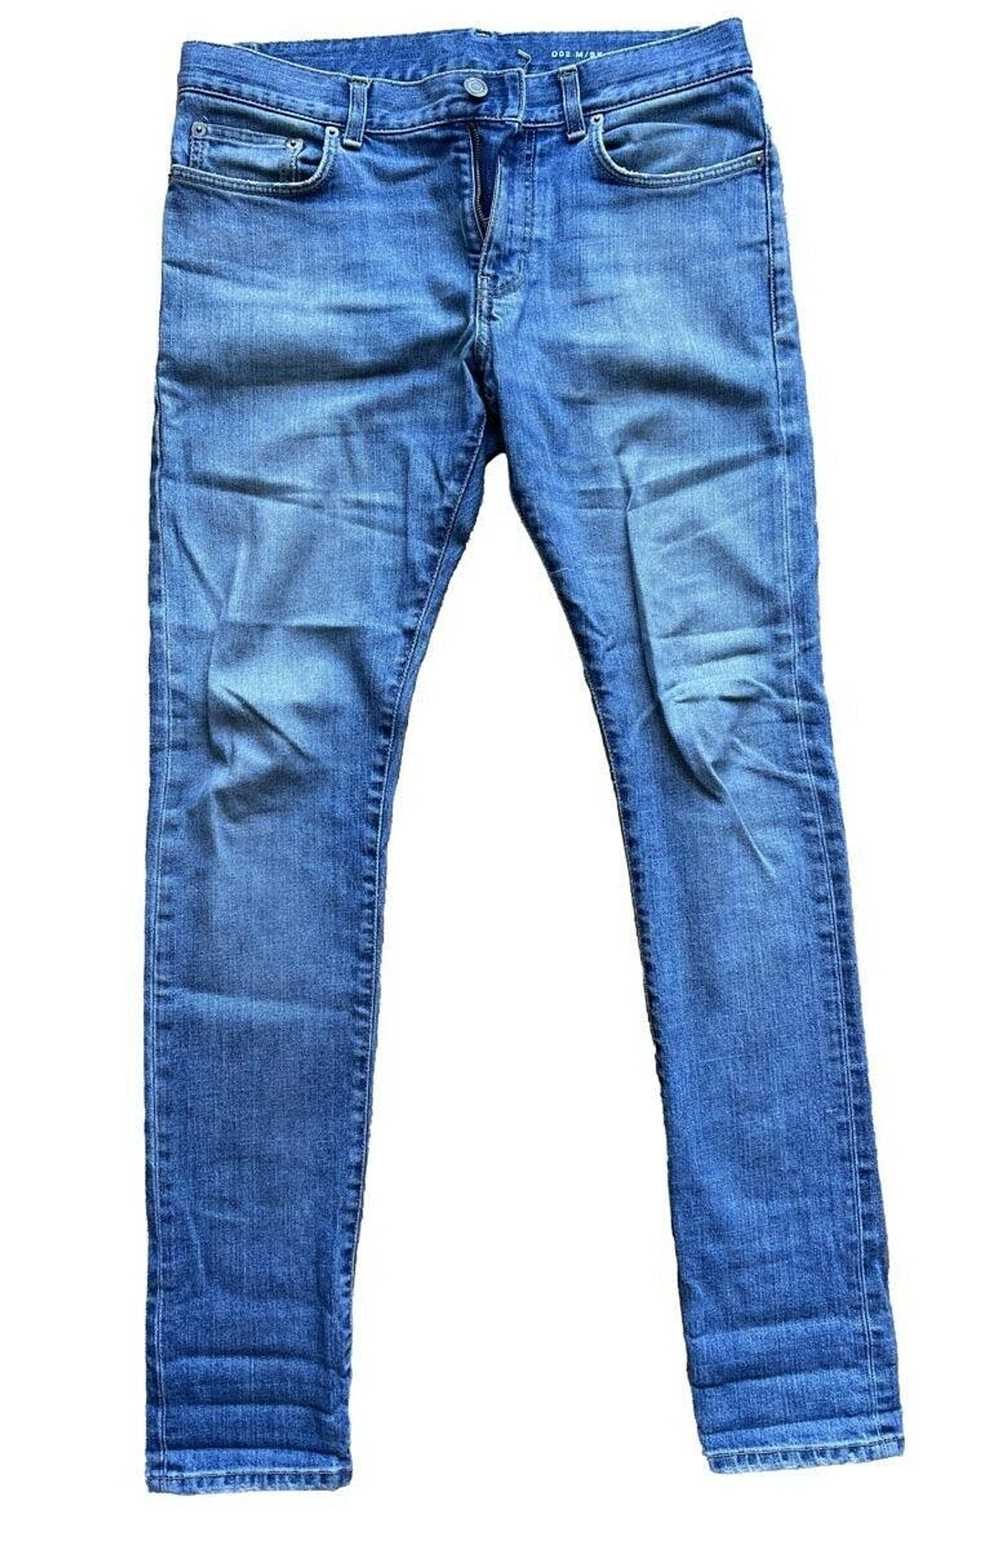 Saint Laurent Paris FW13 Blue Denim 15cm Jeans - image 1